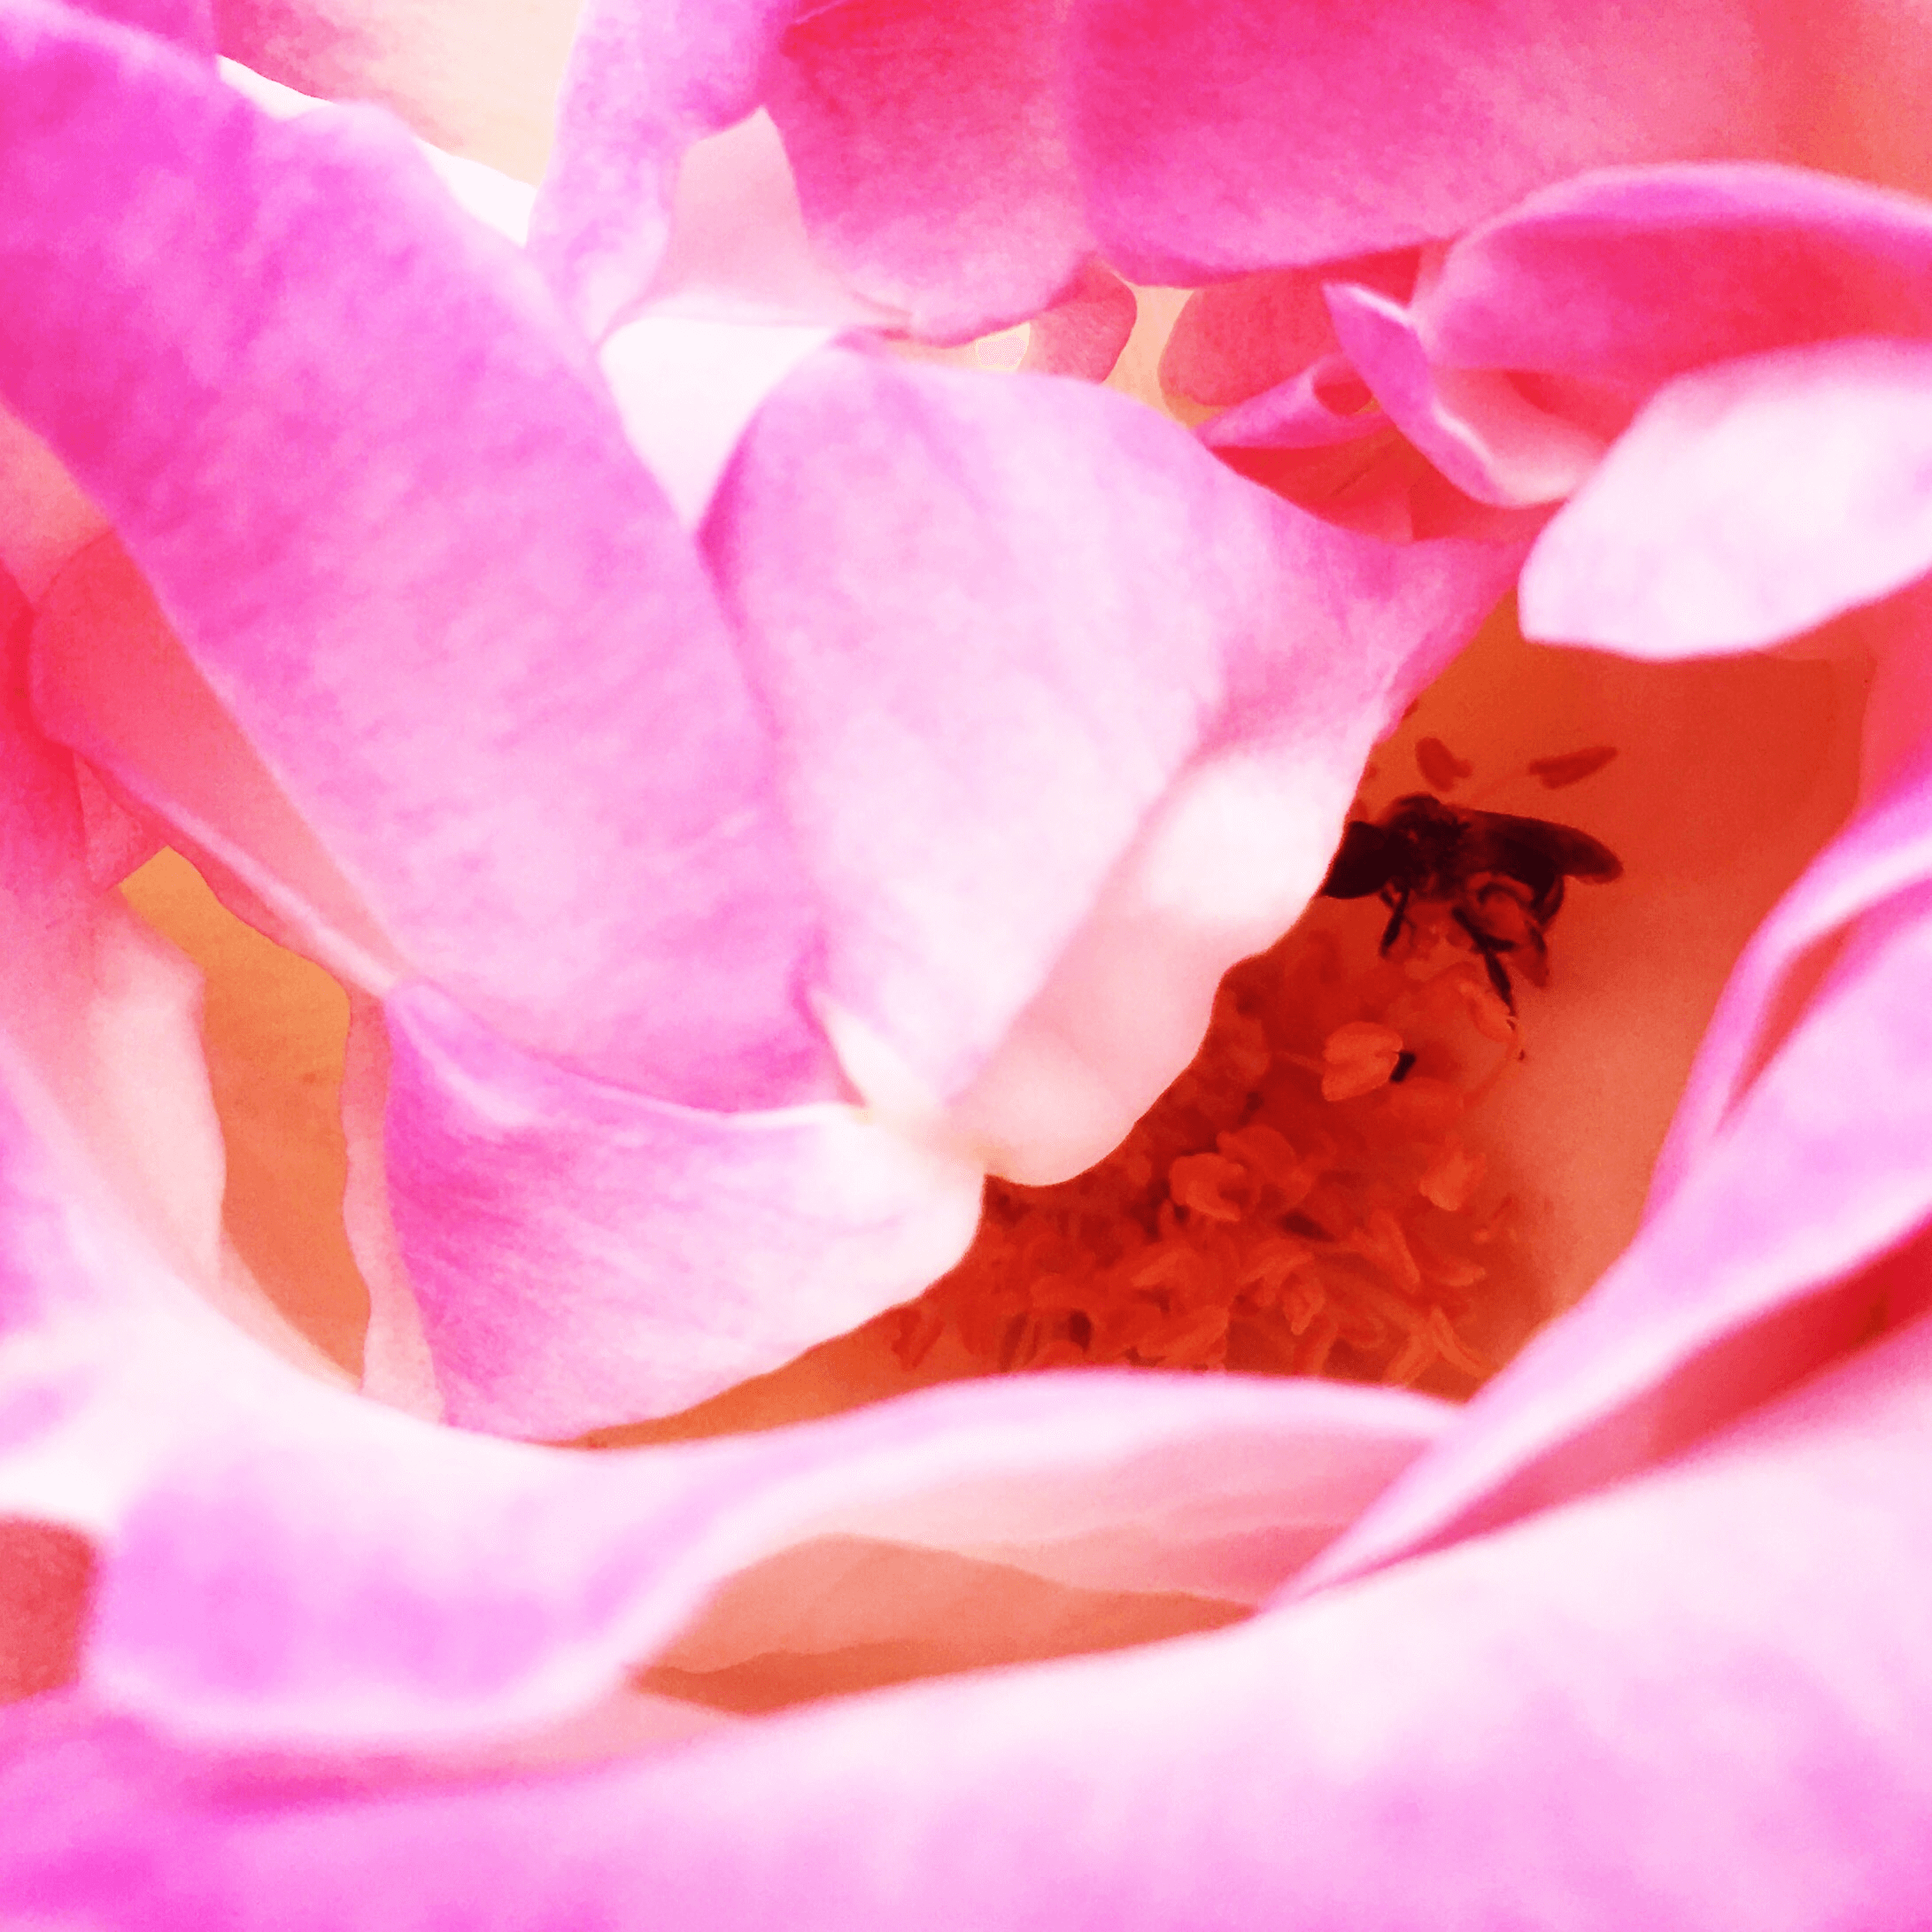 Avé Némitz; intérieur rose